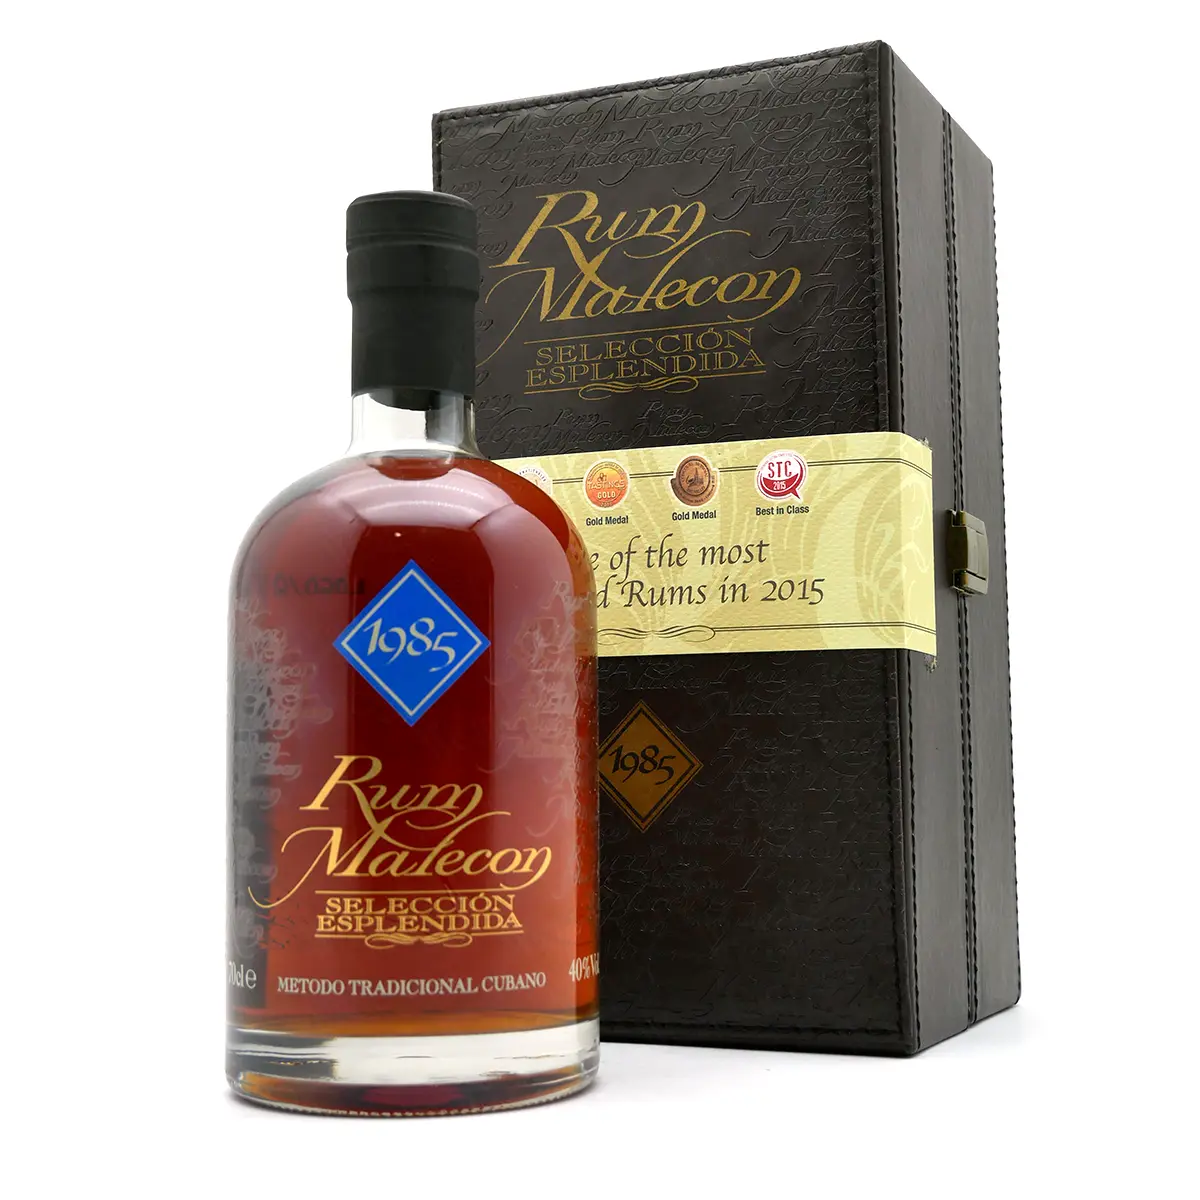 Rum Malecon | 1985 Seleccion Esplendida